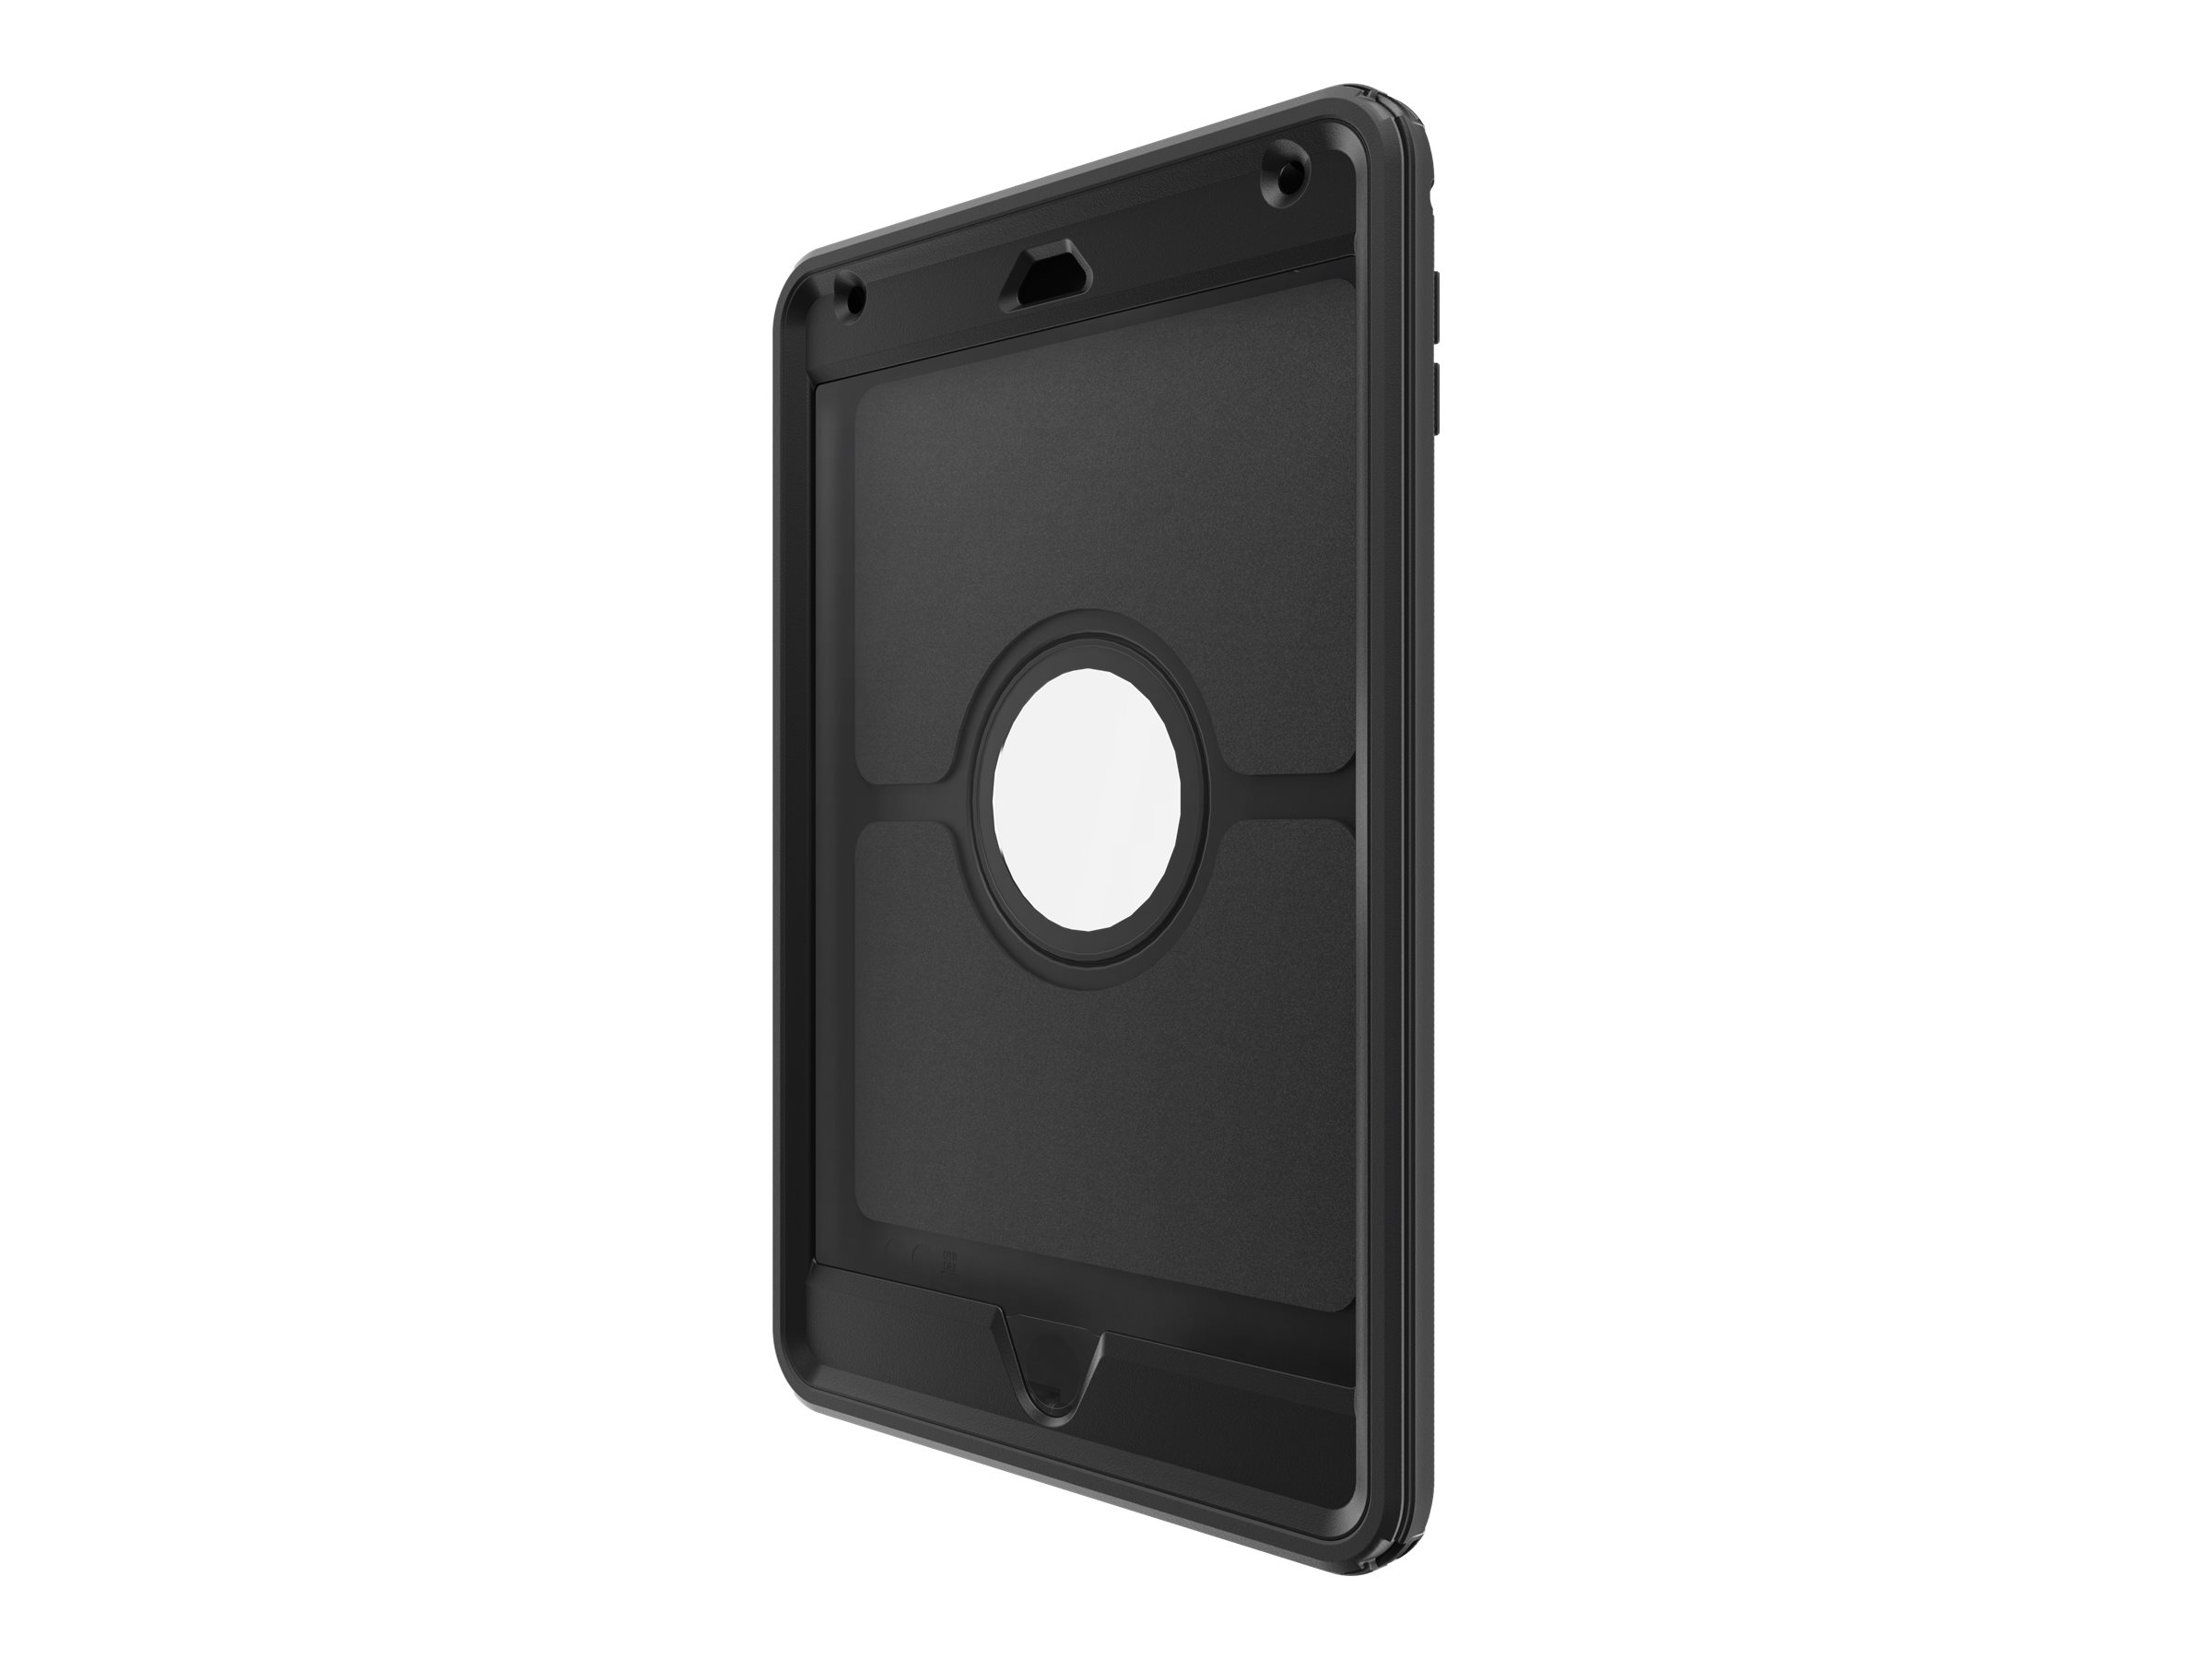 OtterBox Defender Series - Schutzhülle für Tablet - widerstandsfähig - Polycarbonat, Kunstfaser - Schwarz - für Apple iPad mini 